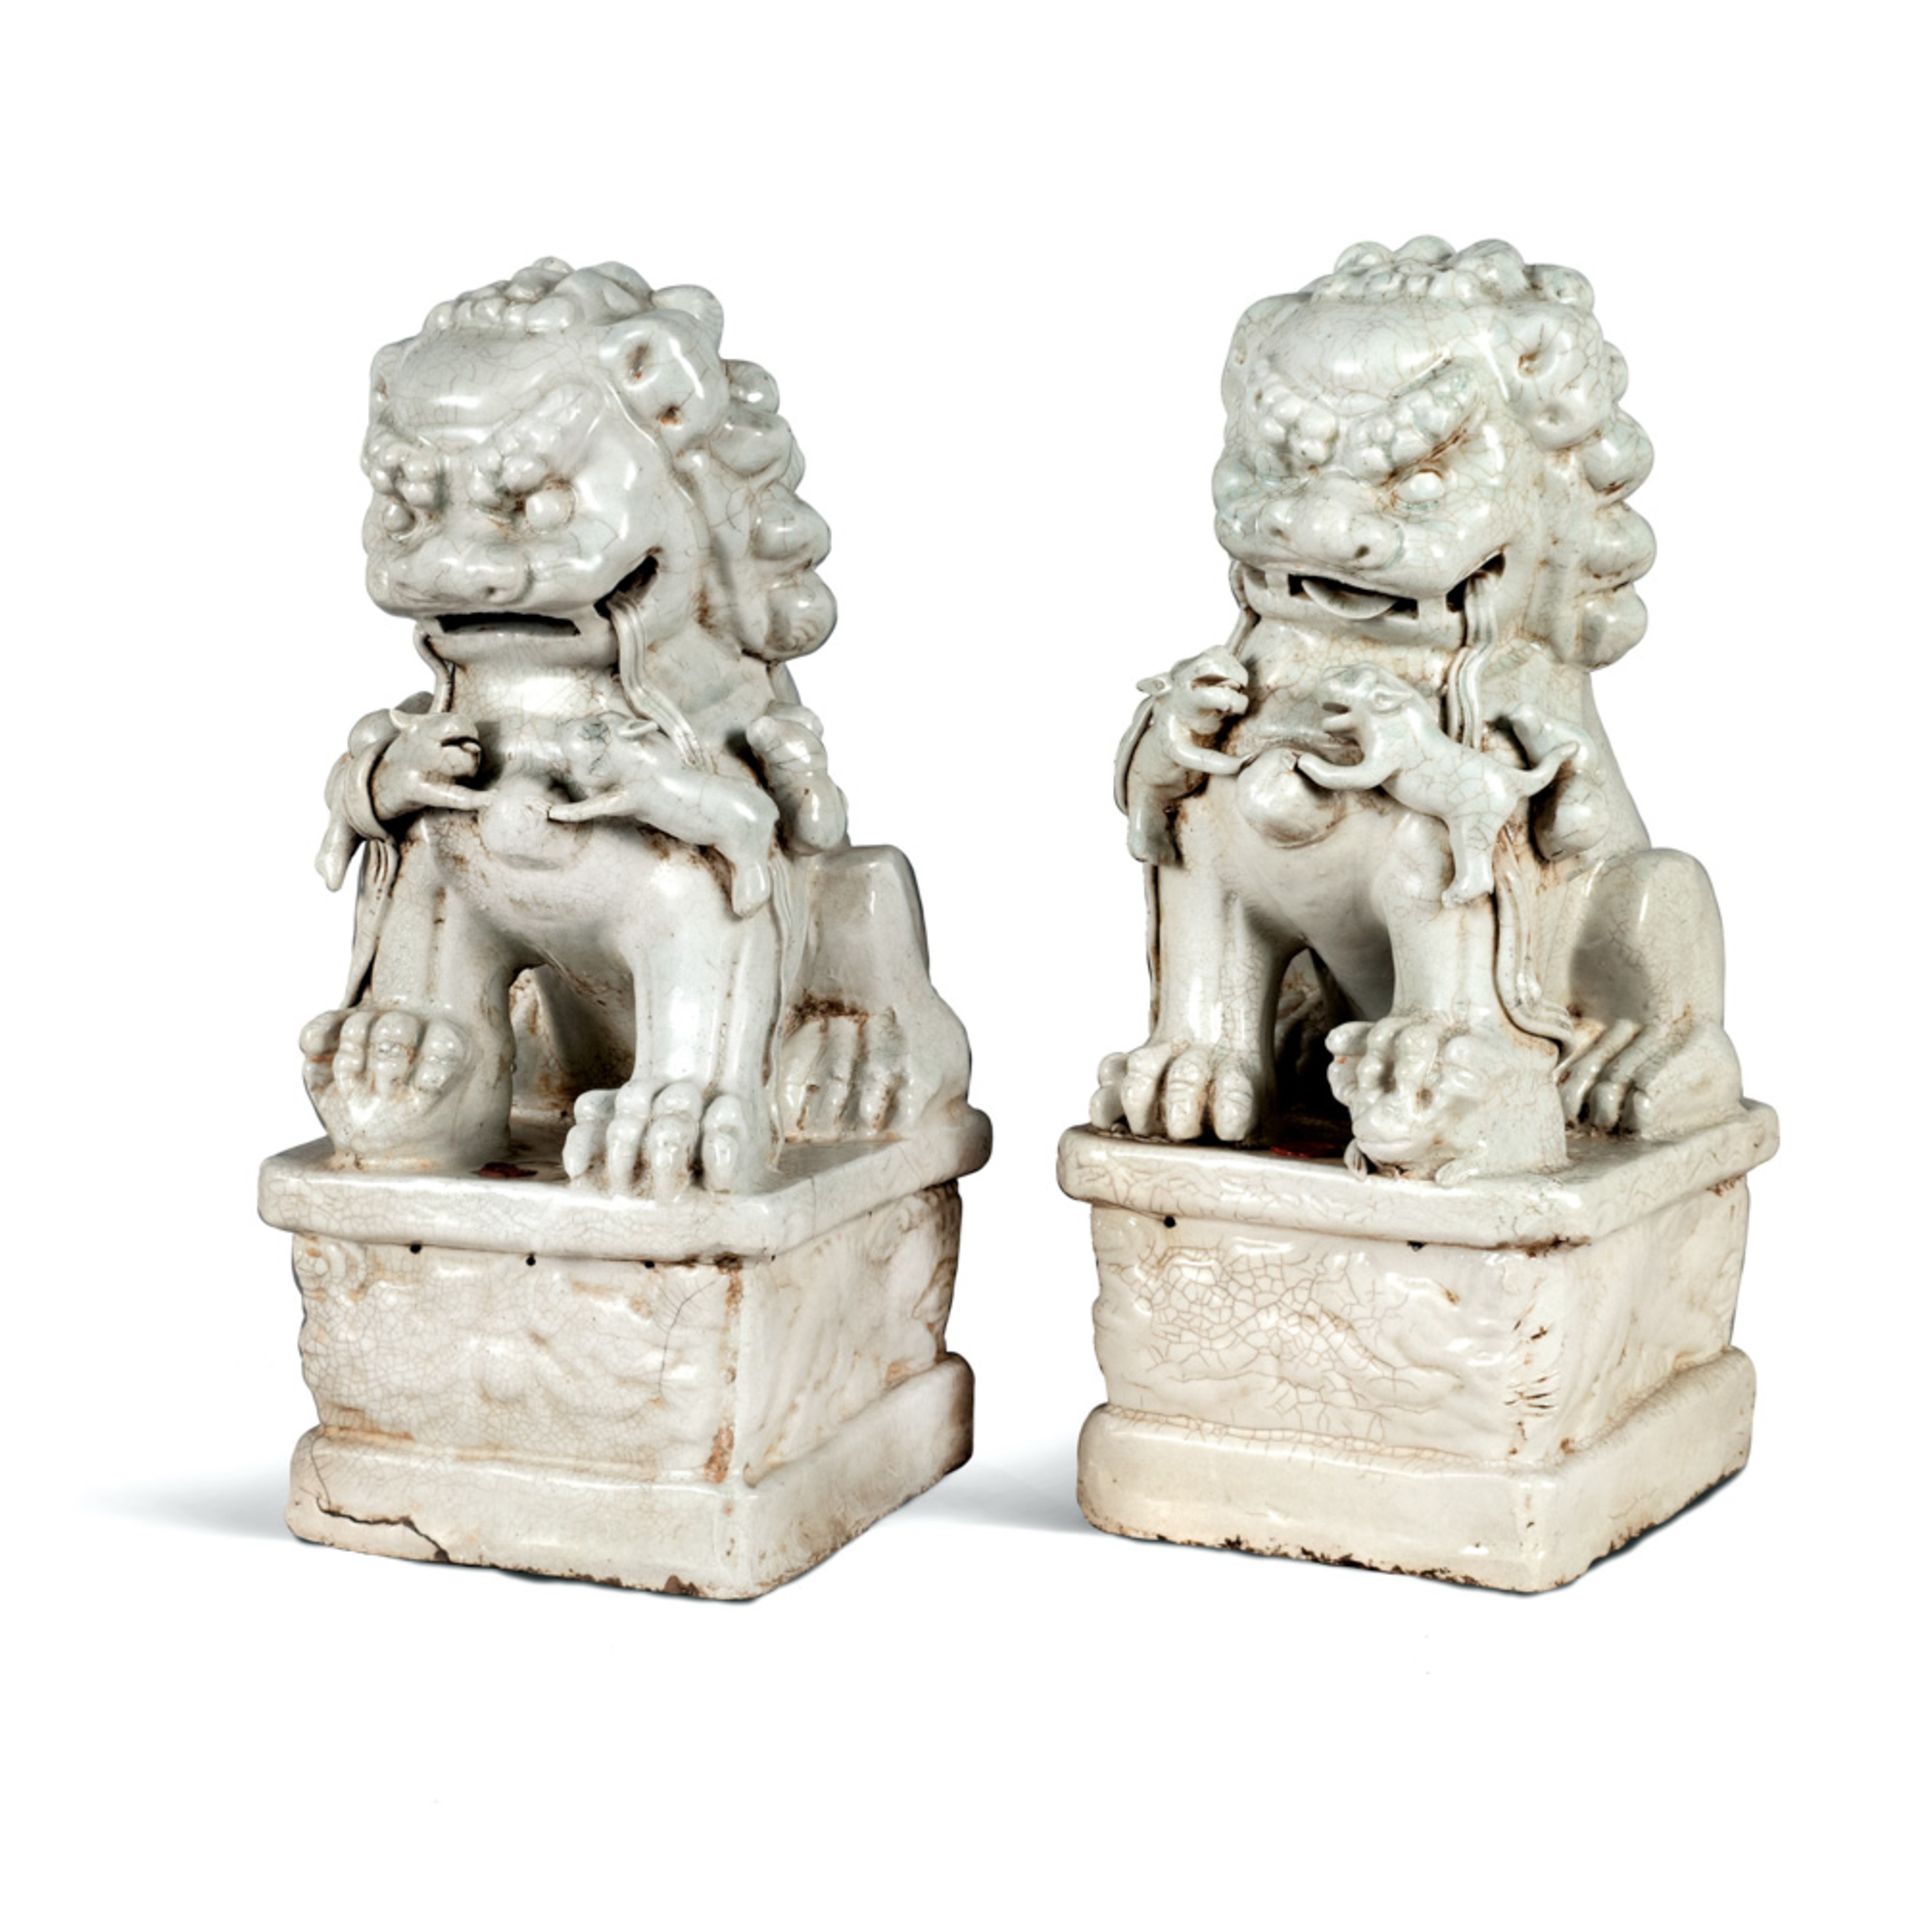 Pair of white glazed terracotta figures